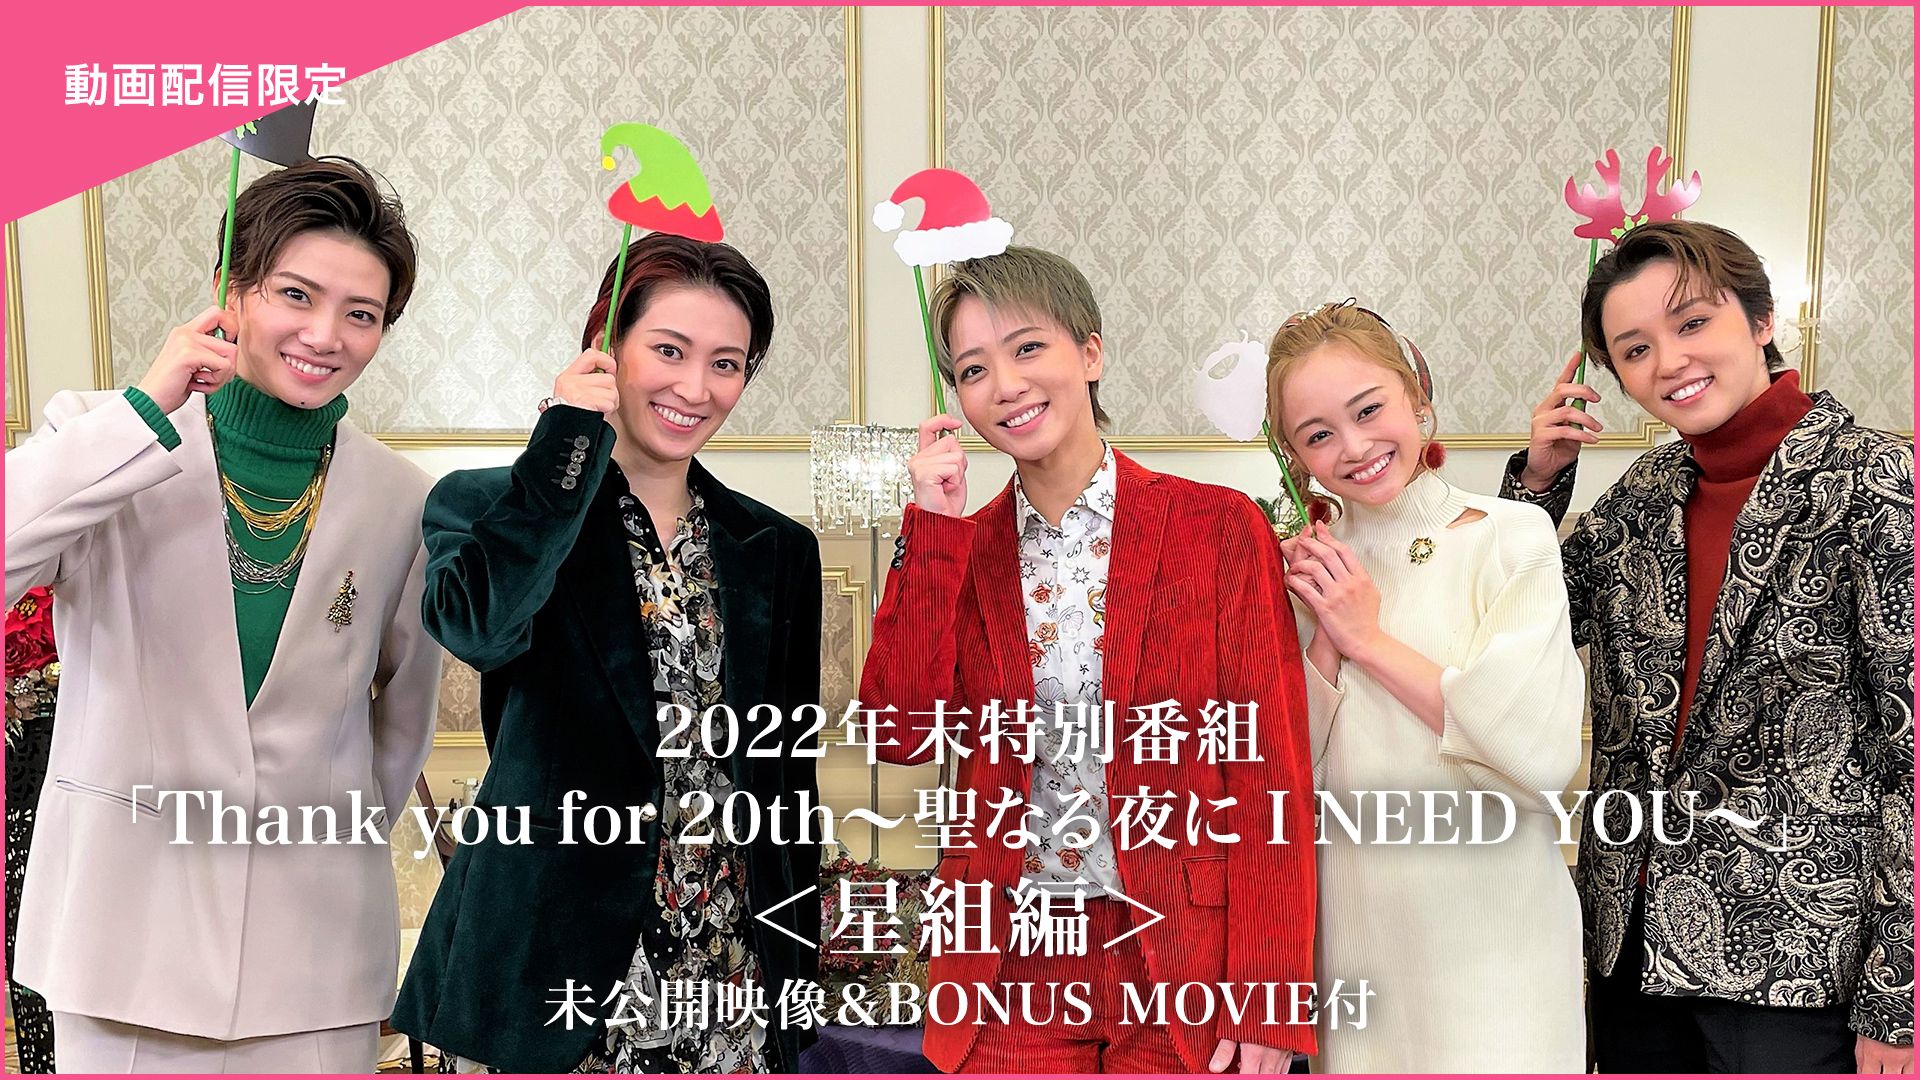 2022年末特別番組「Thank you for 20th〜聖なる夜に I NEED YOU〜」<星組編>未公開映像&BONUS MOVIE付